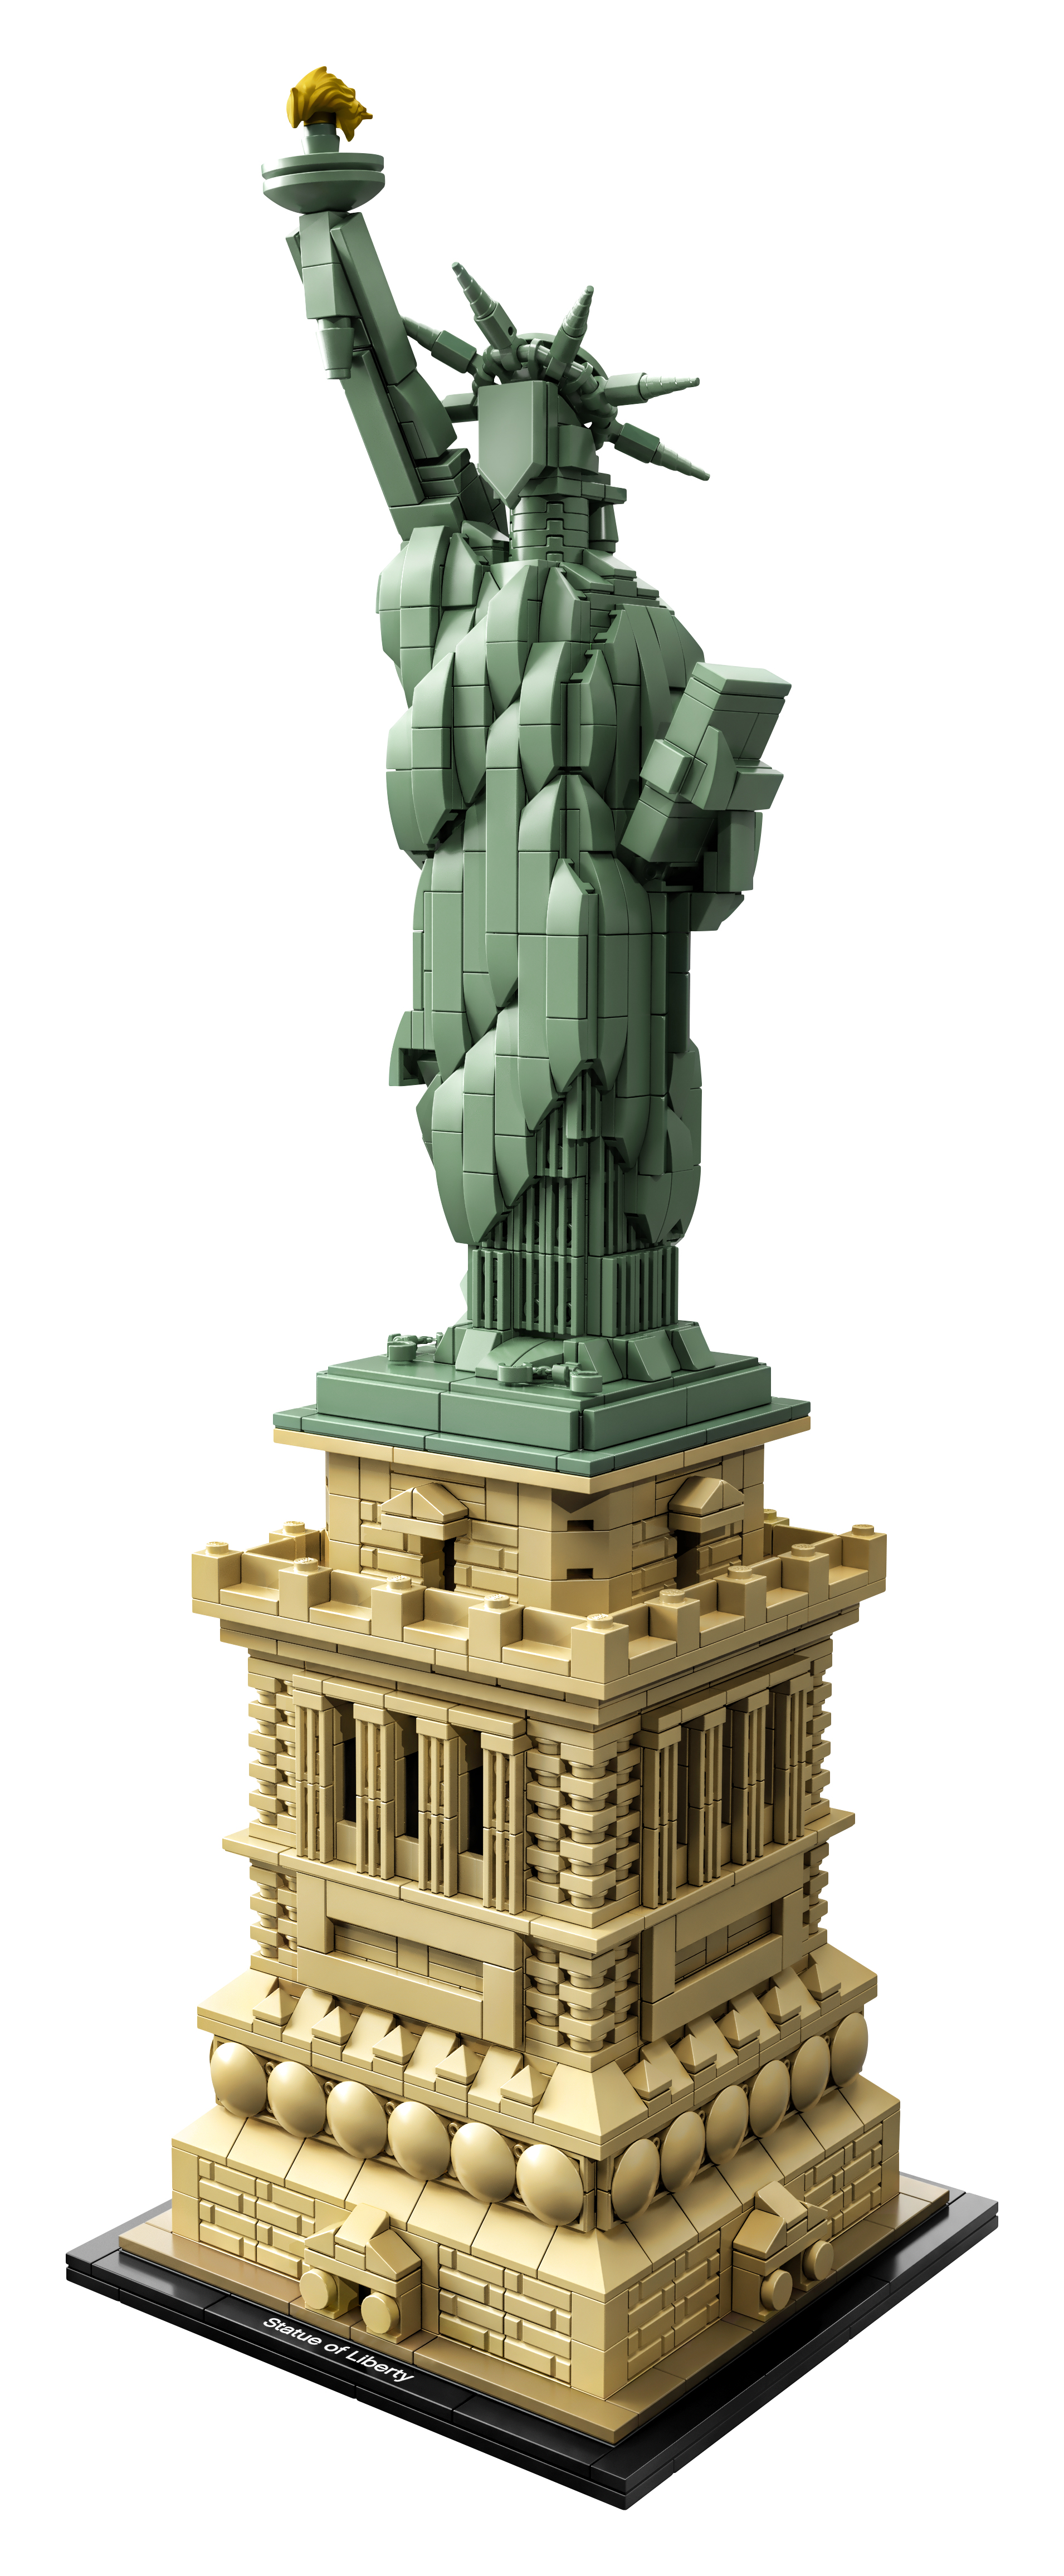 Mehrfarbig Bausatz, LEGO Architecture Freiheitsstatue 21042